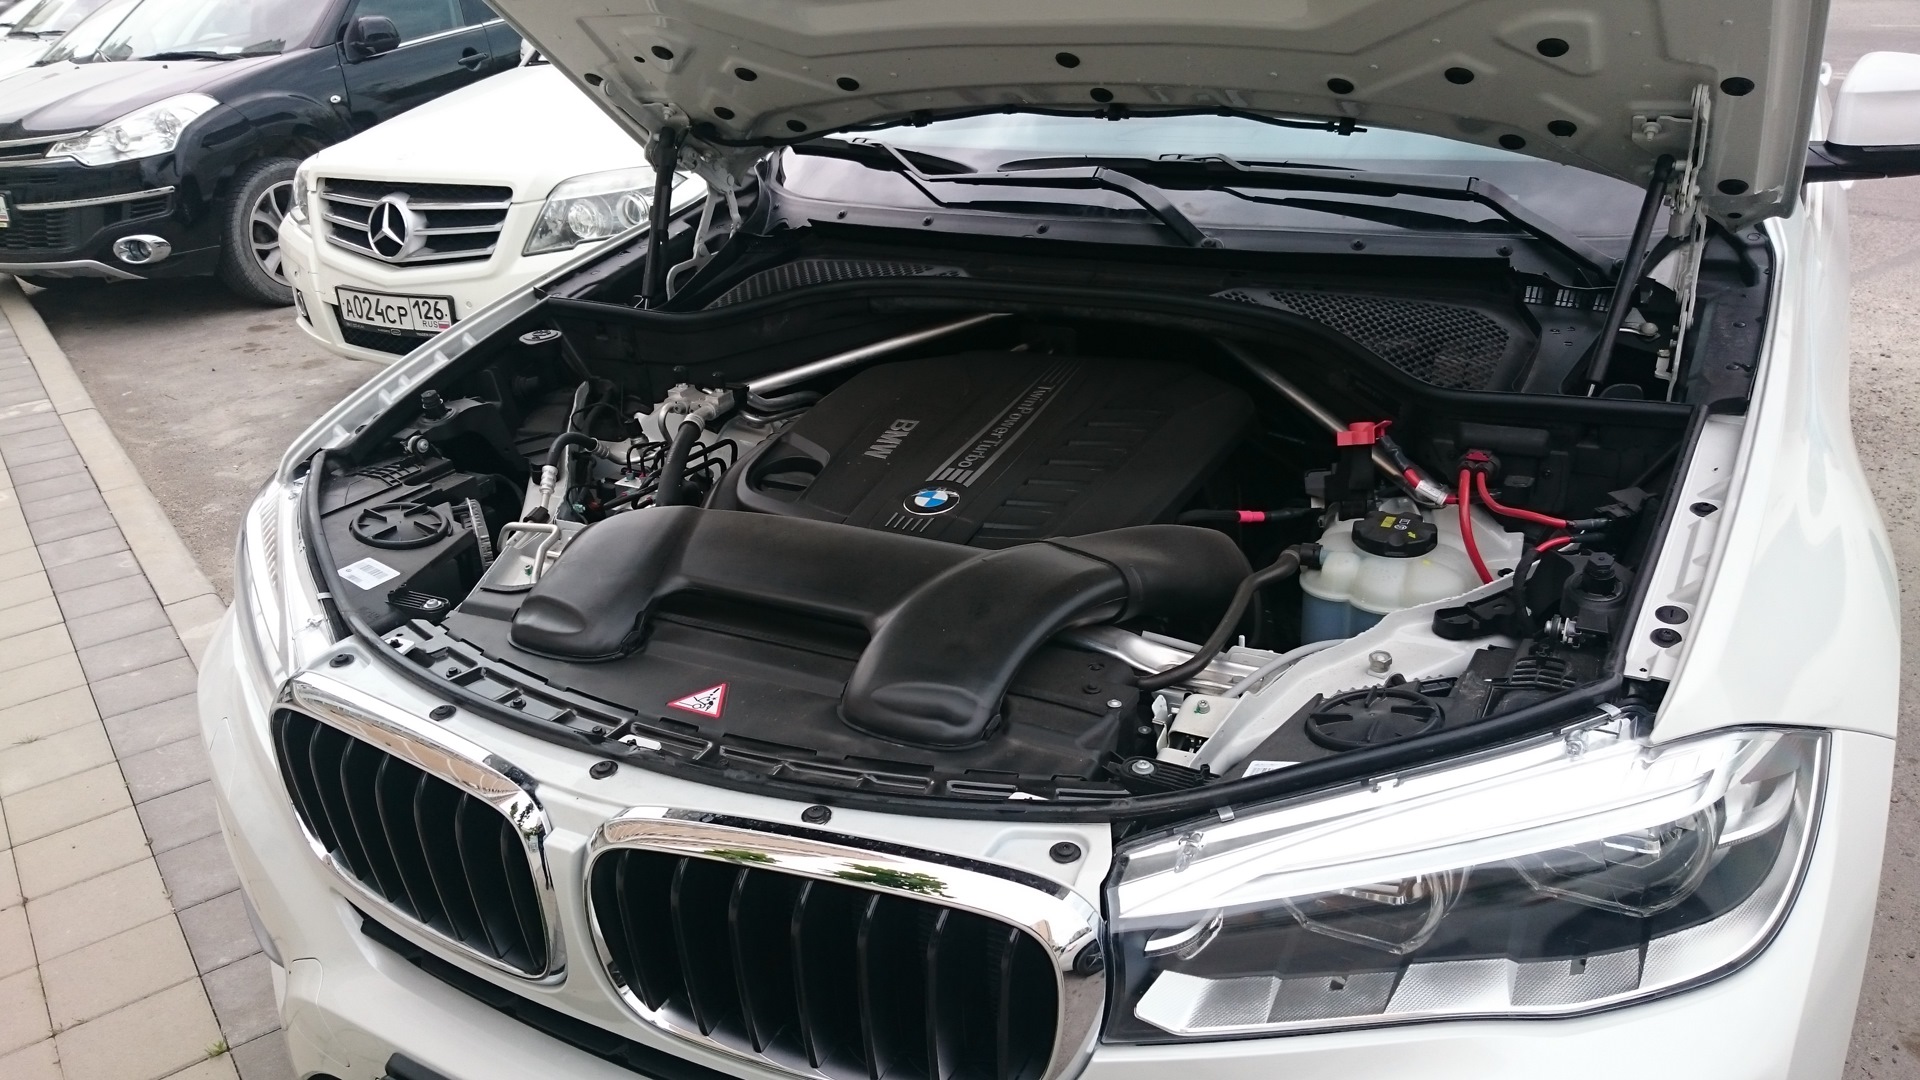 Как открыть капот на бмв. BMW x6 f мотор. BMW x6 f16 под капотом. Подкапотное пространство BMW x6 f16. BMW x5 g05 под капотом.